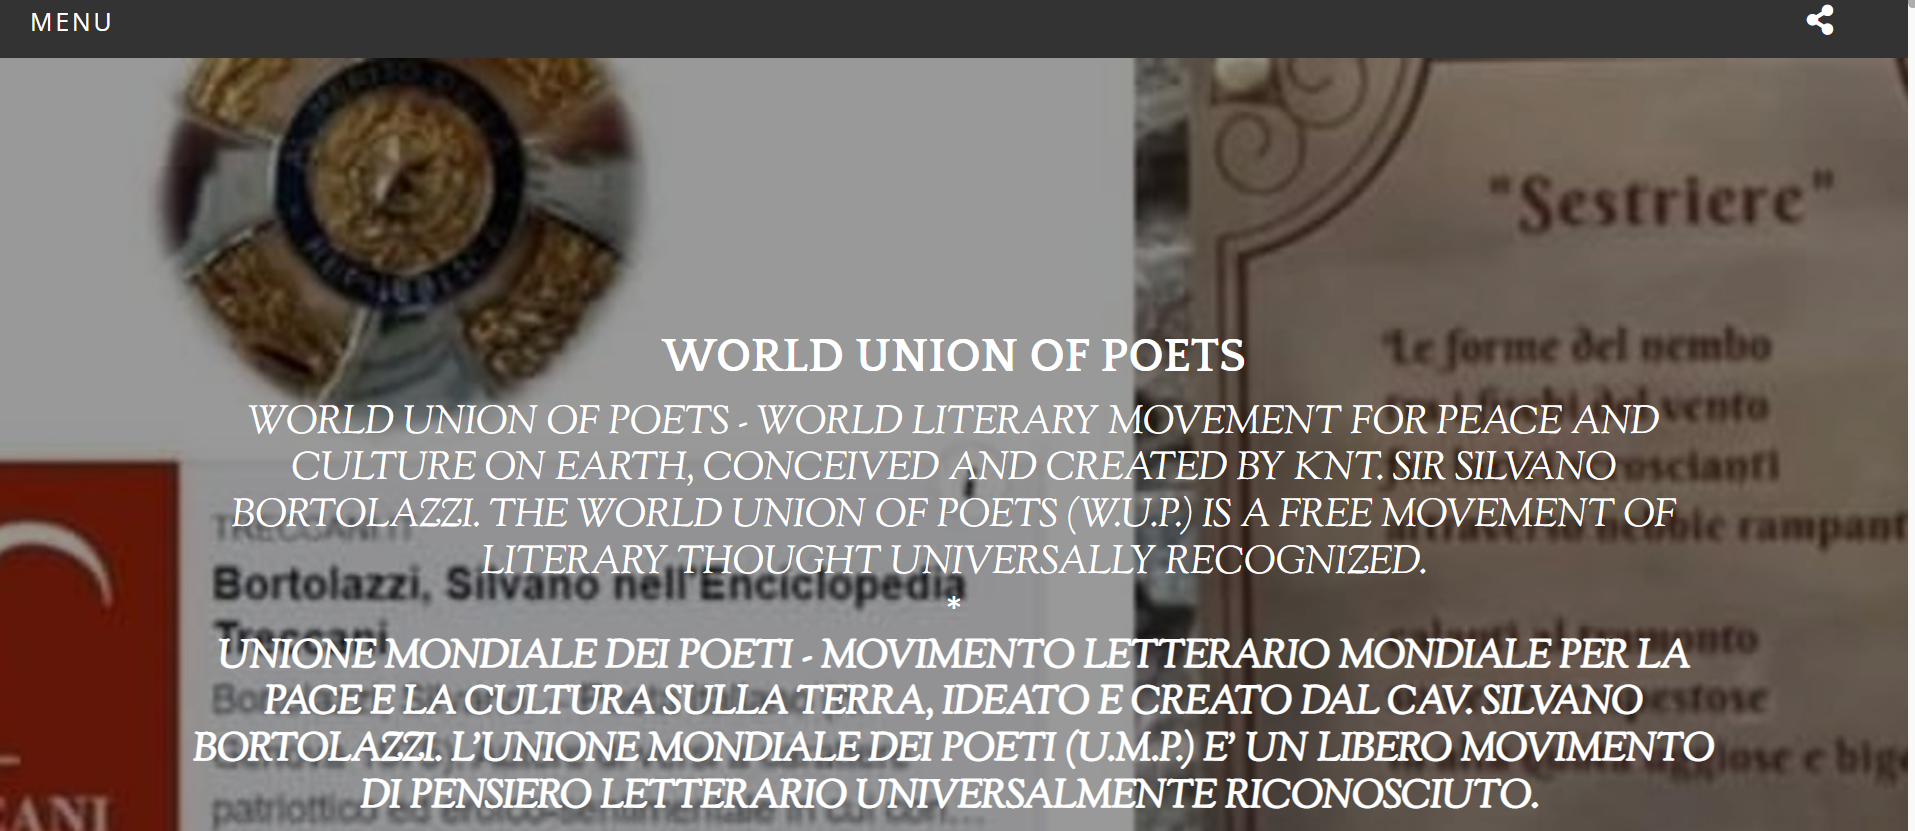 Website của tổ chức Liên đoàn các nhà thơ thế giới” được thiết kết đơn giản với nội dung rất sơ sài - Ảnh chụp trang web https://www.worldunionofpoets.it/